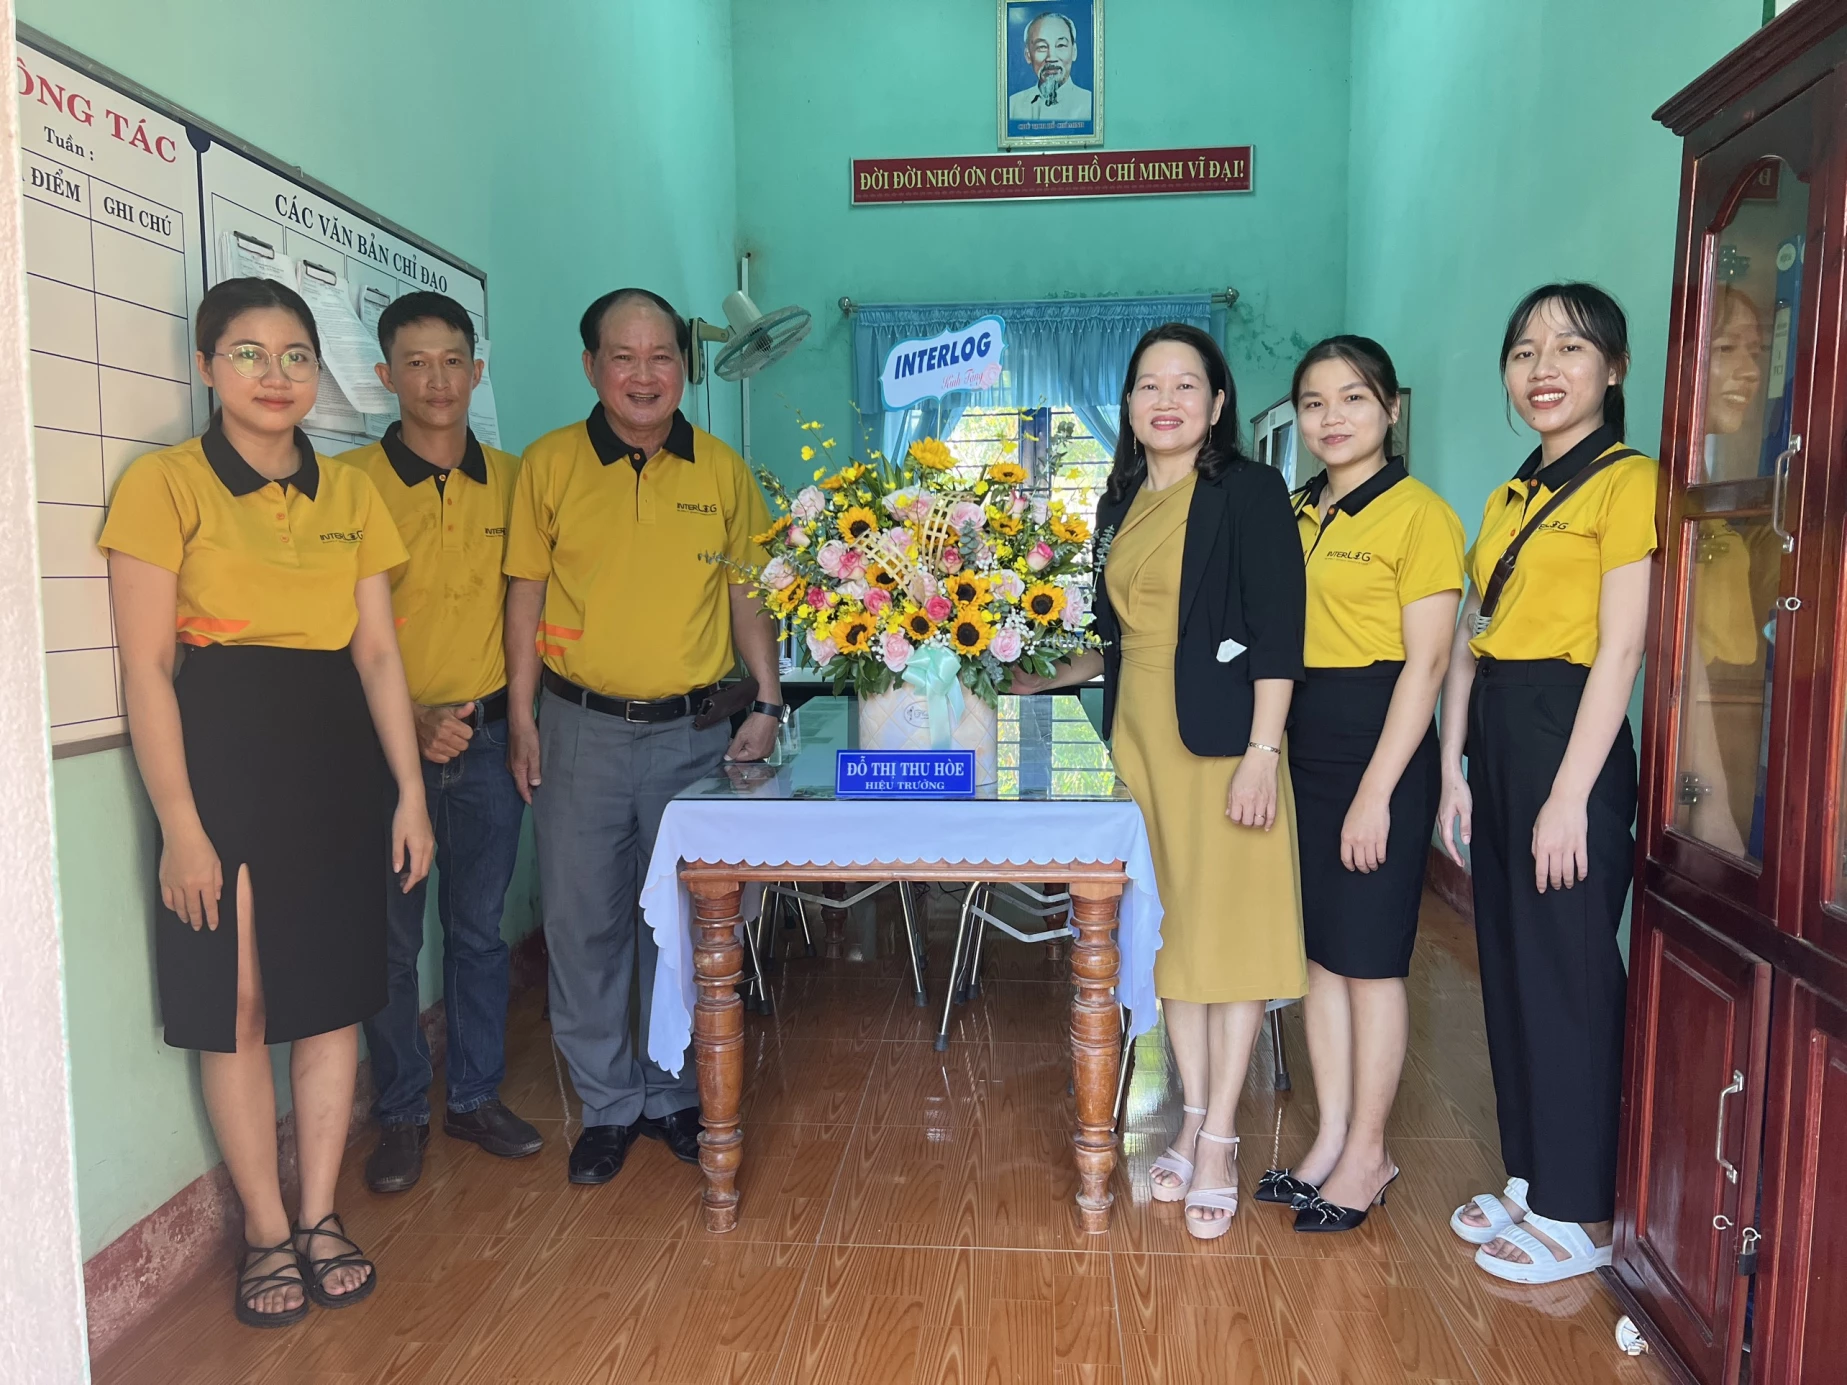 Cùng InterLOG ghé thăm Trường Tân Học Phú Lâm - Ngôi trường tiên phong thuộc phong trao Duy Tân